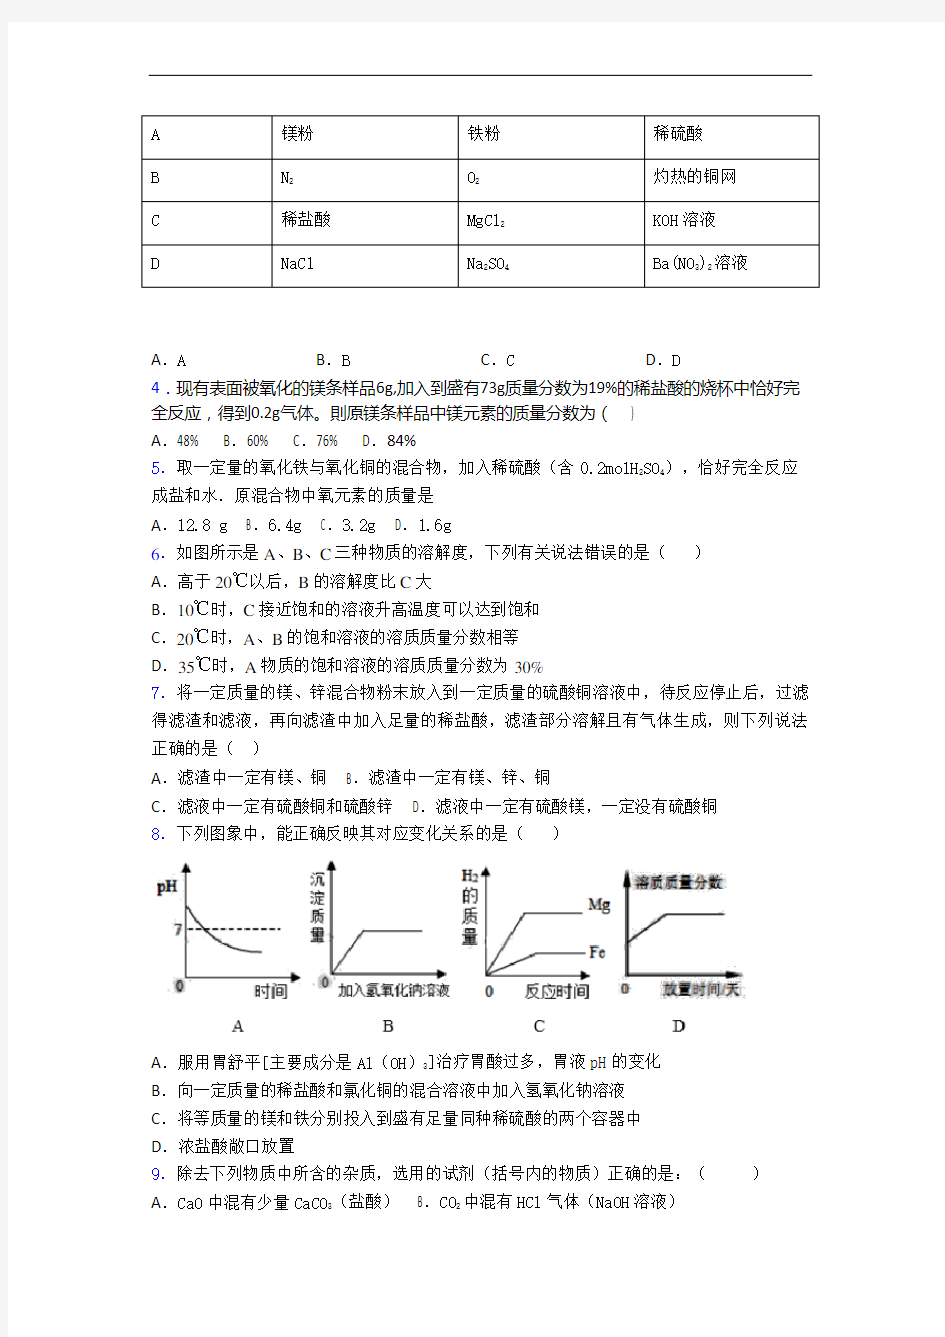 山西省沁县中学高一分班考试题化学卷_图文